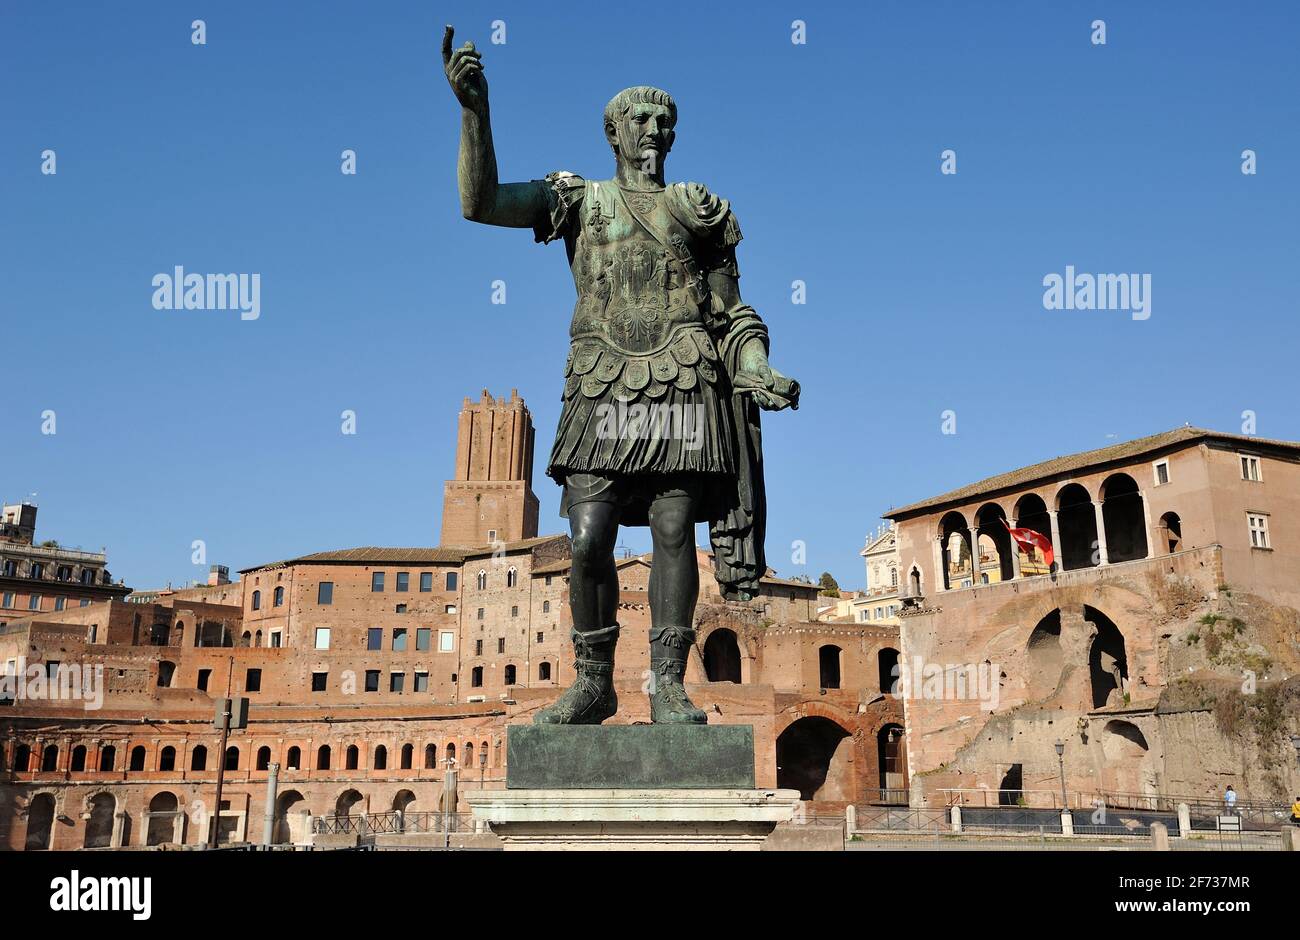 Italia, Roma, statua in bronzo del romano imperatore Traiano e mercati di Traiano Foto Stock